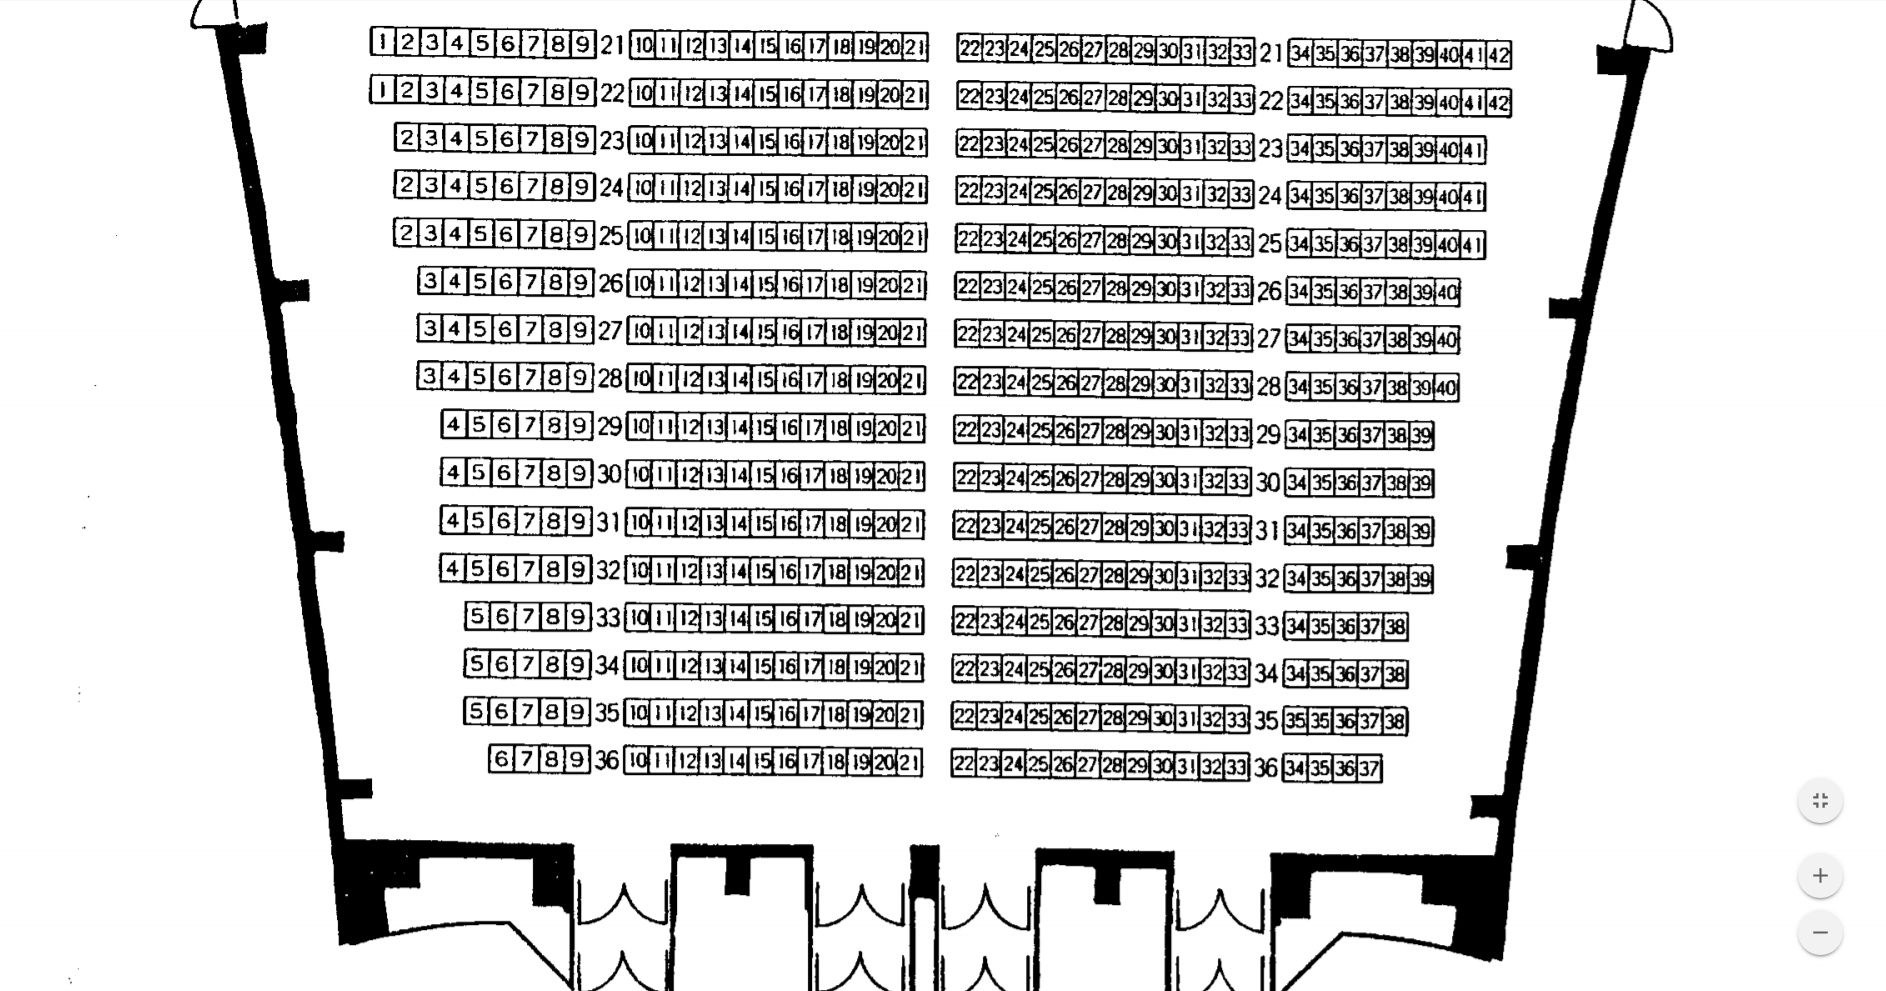 千葉県文化会館大ホール(1F前方)座席表